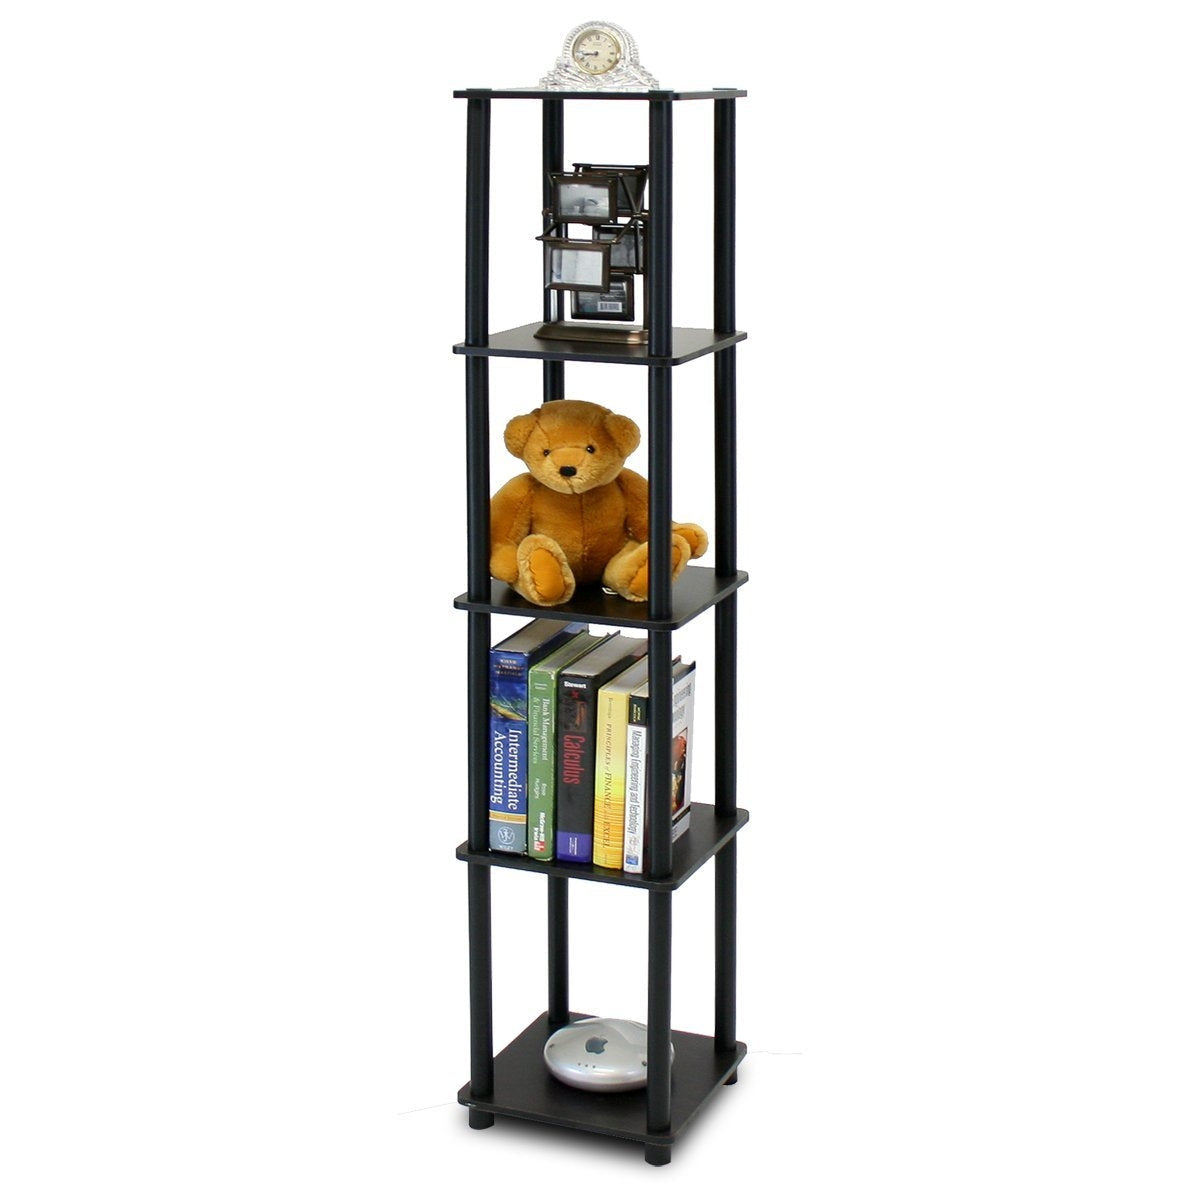 Office > Bookcases - 5-Tier Square Corner Display Shelf Bookcase In Espresso/Black